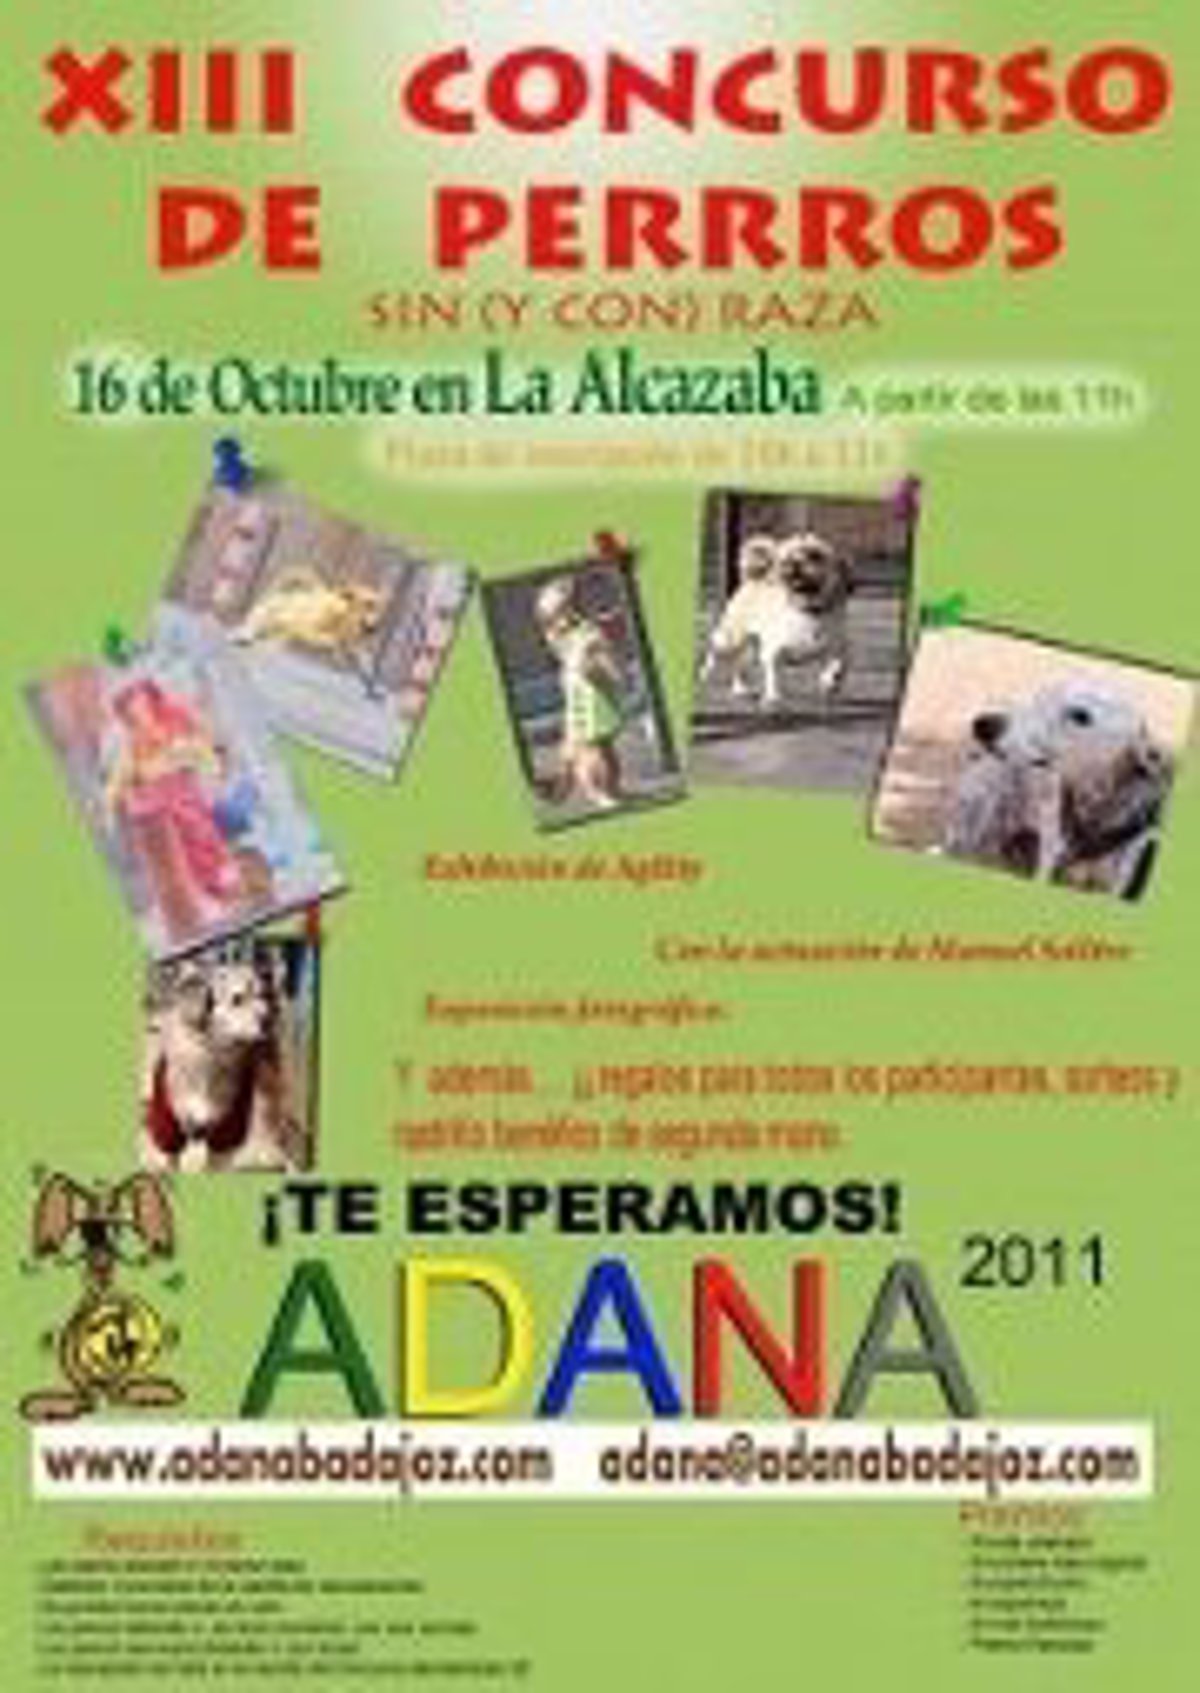 Tormento Montaña Rizo Adana celebra este domingo en Badajoz su XIII Concurso de Perros sin (y  con) raza